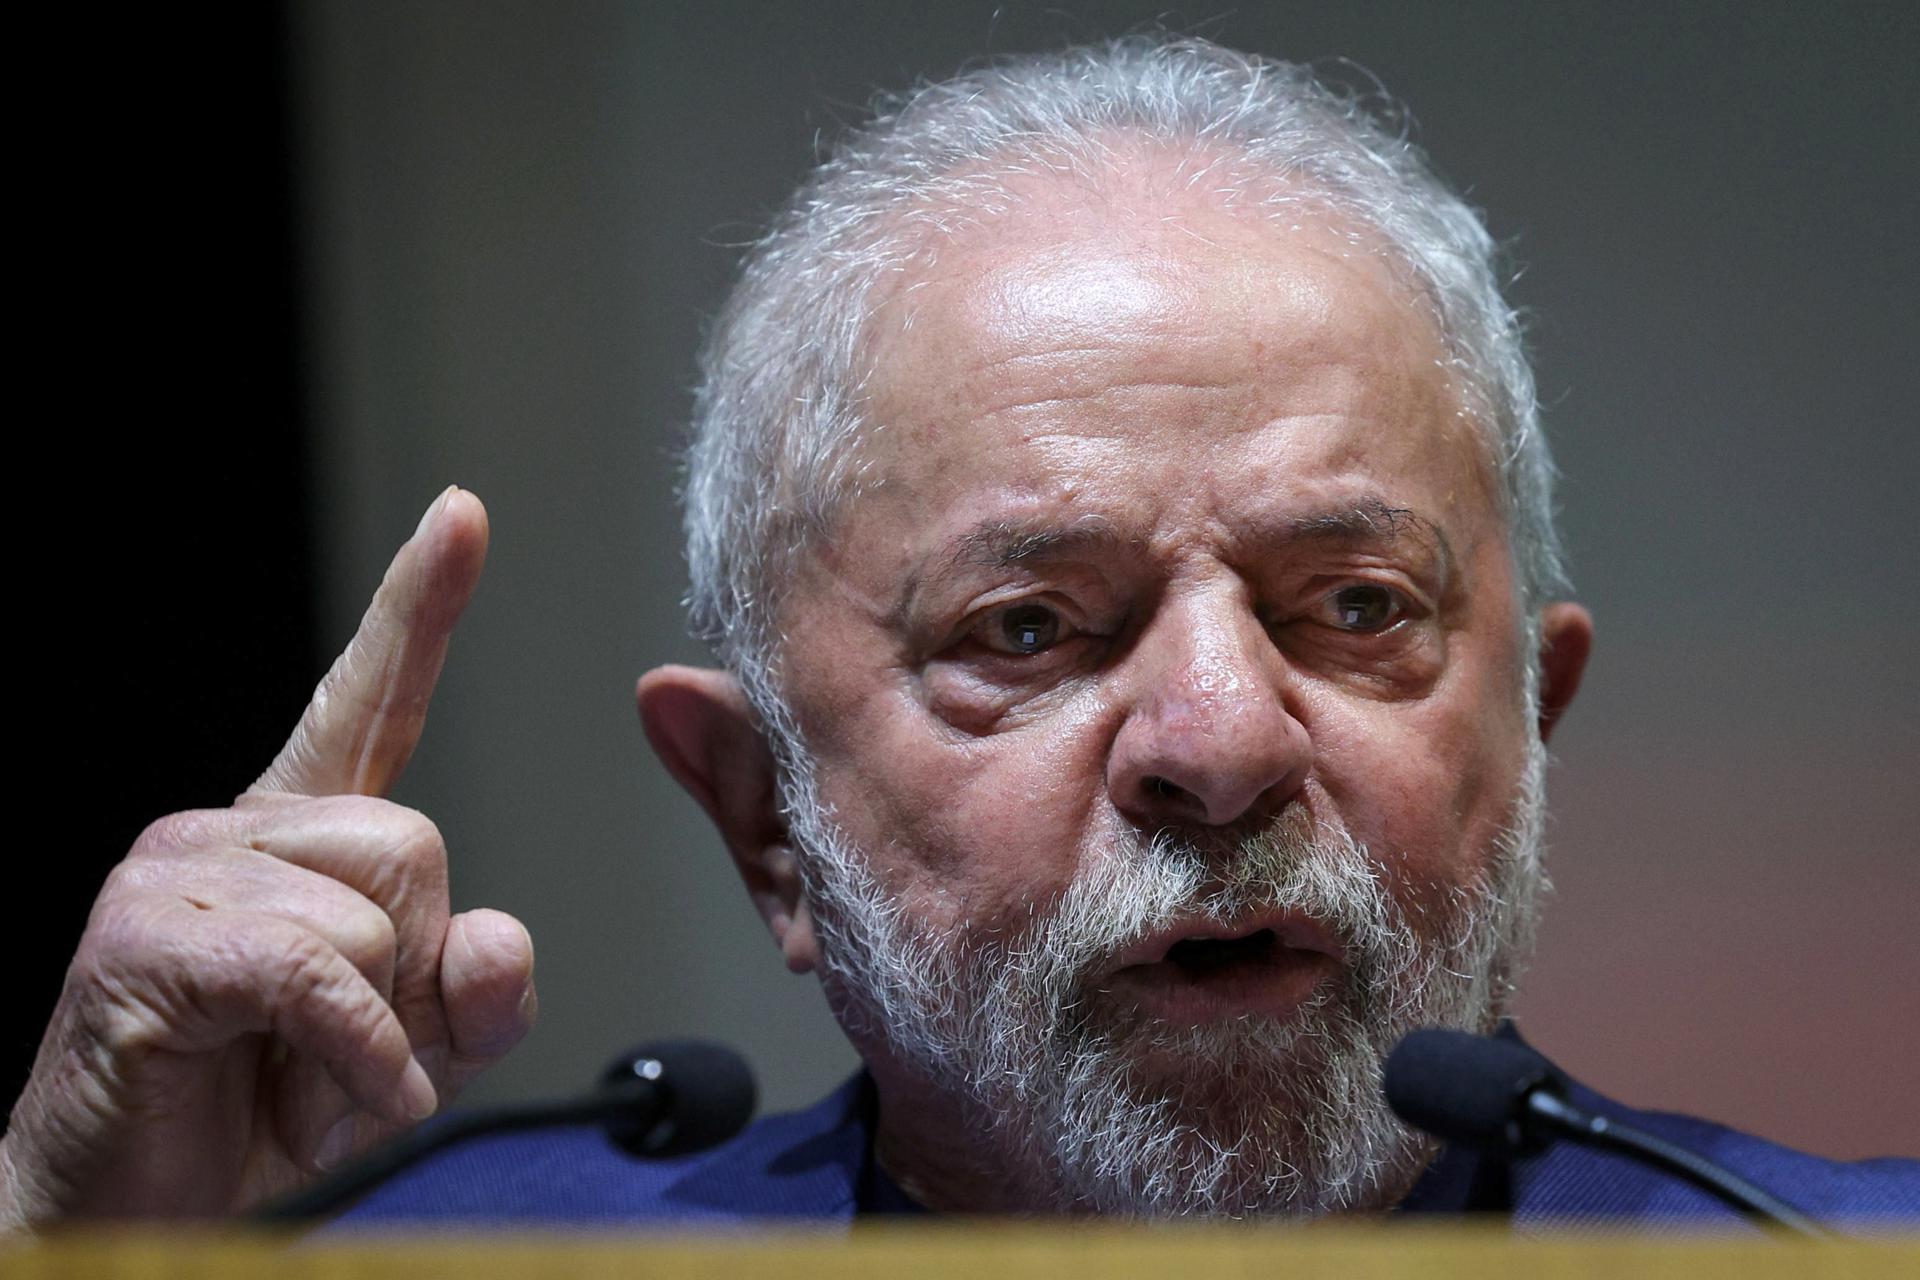 El presidente electo de Brasil, Luiz Inácio Lula da Silva, en una fotografía de archivo. EFE/EPA/Antonio Cotrim